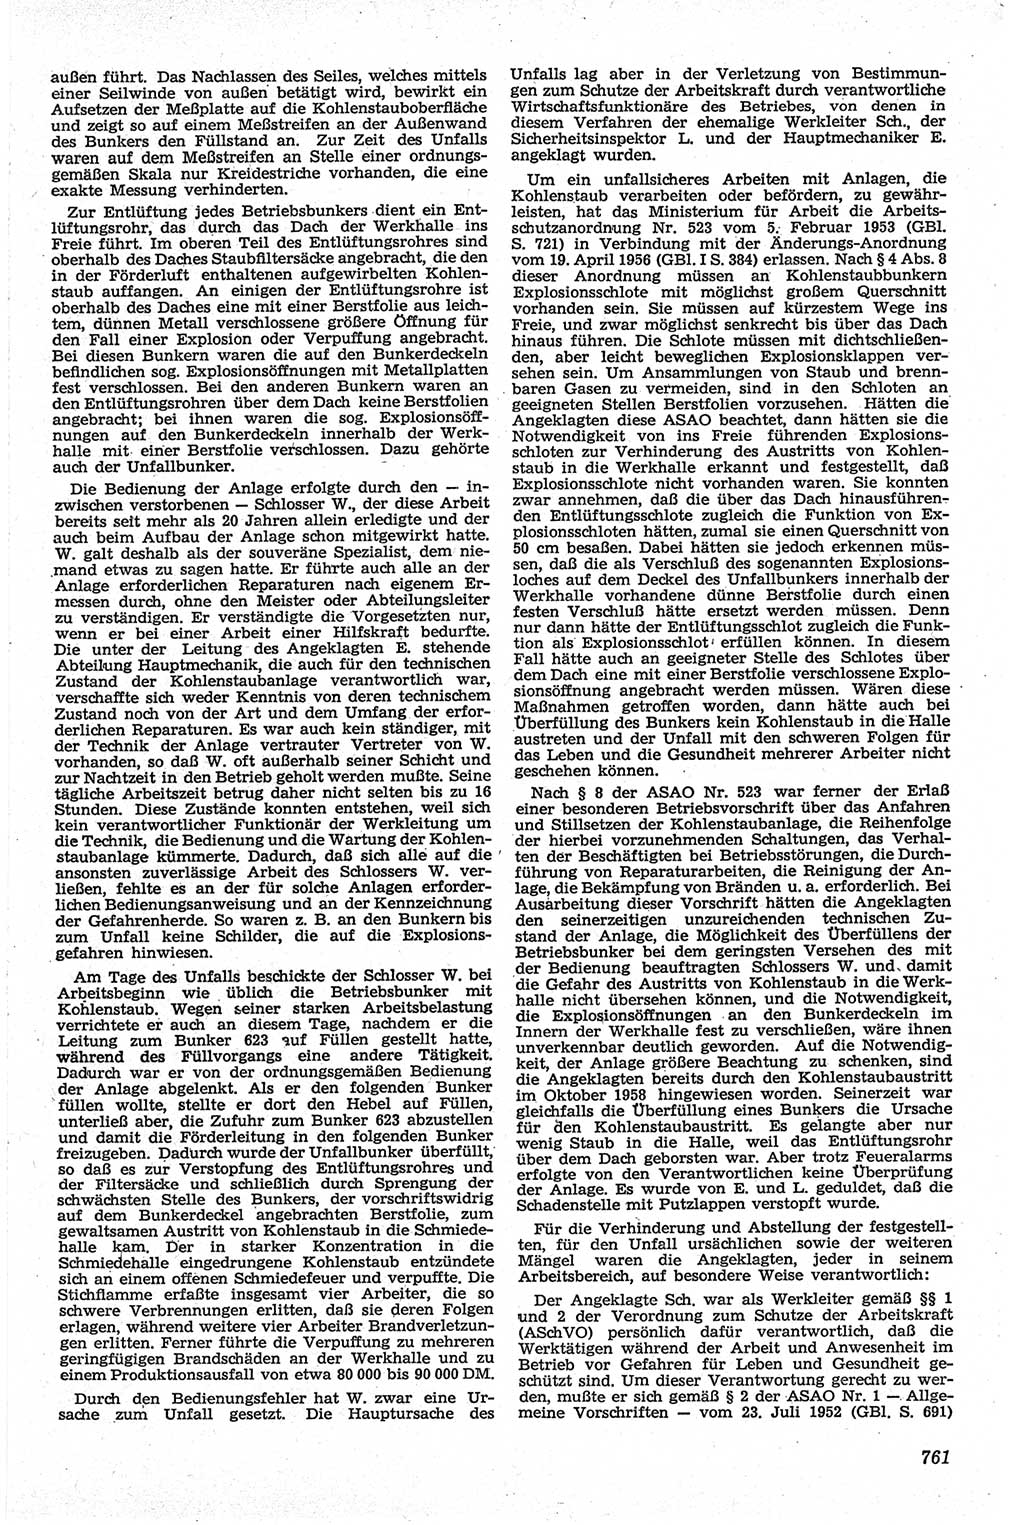 Neue Justiz (NJ), Zeitschrift für Recht und Rechtswissenschaft [Deutsche Demokratische Republik (DDR)], 13. Jahrgang 1959, Seite 761 (NJ DDR 1959, S. 761)